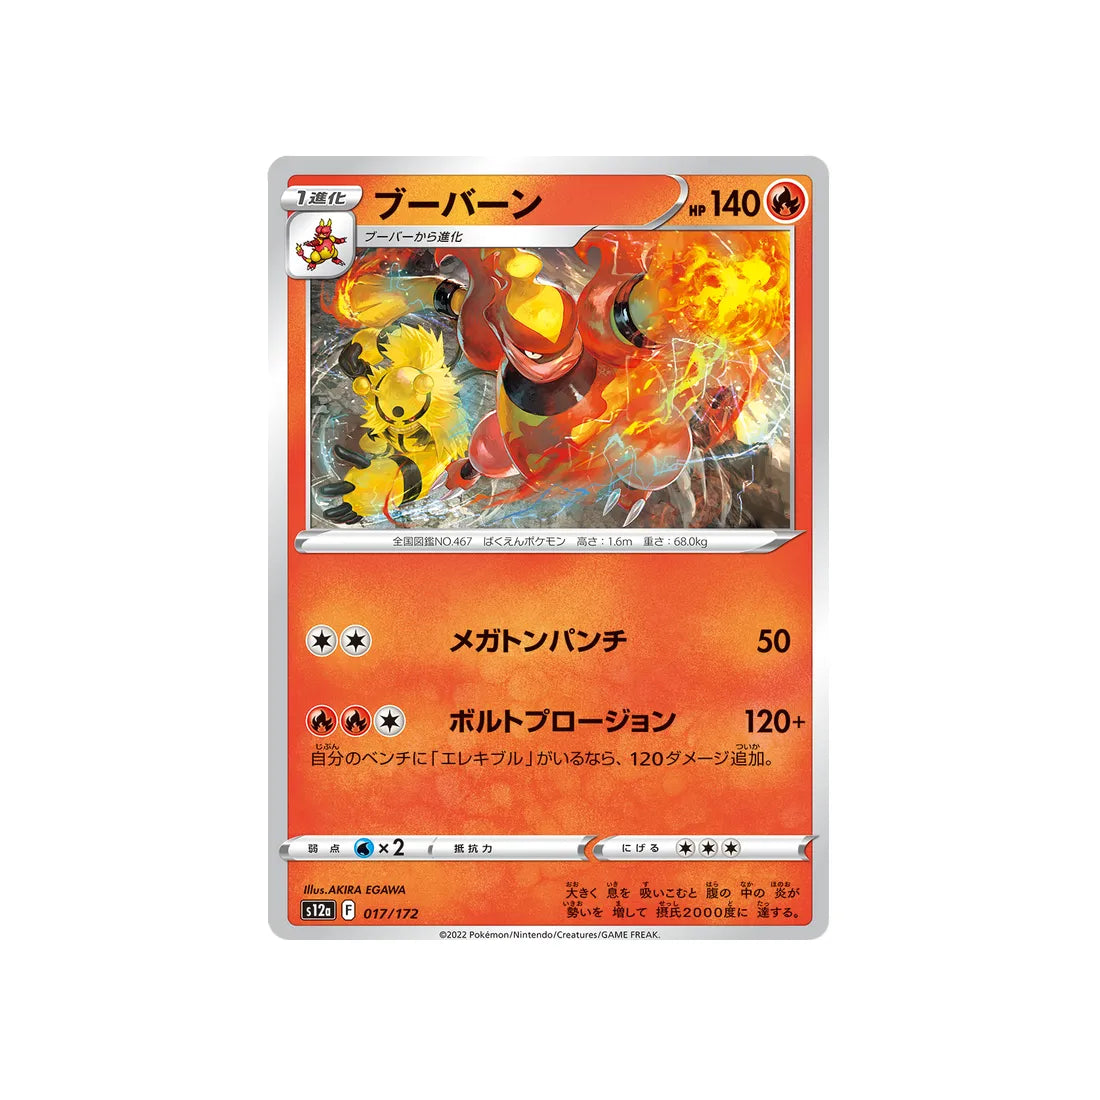 maganon-carte-pokemon-vstar-universe-s12a-017